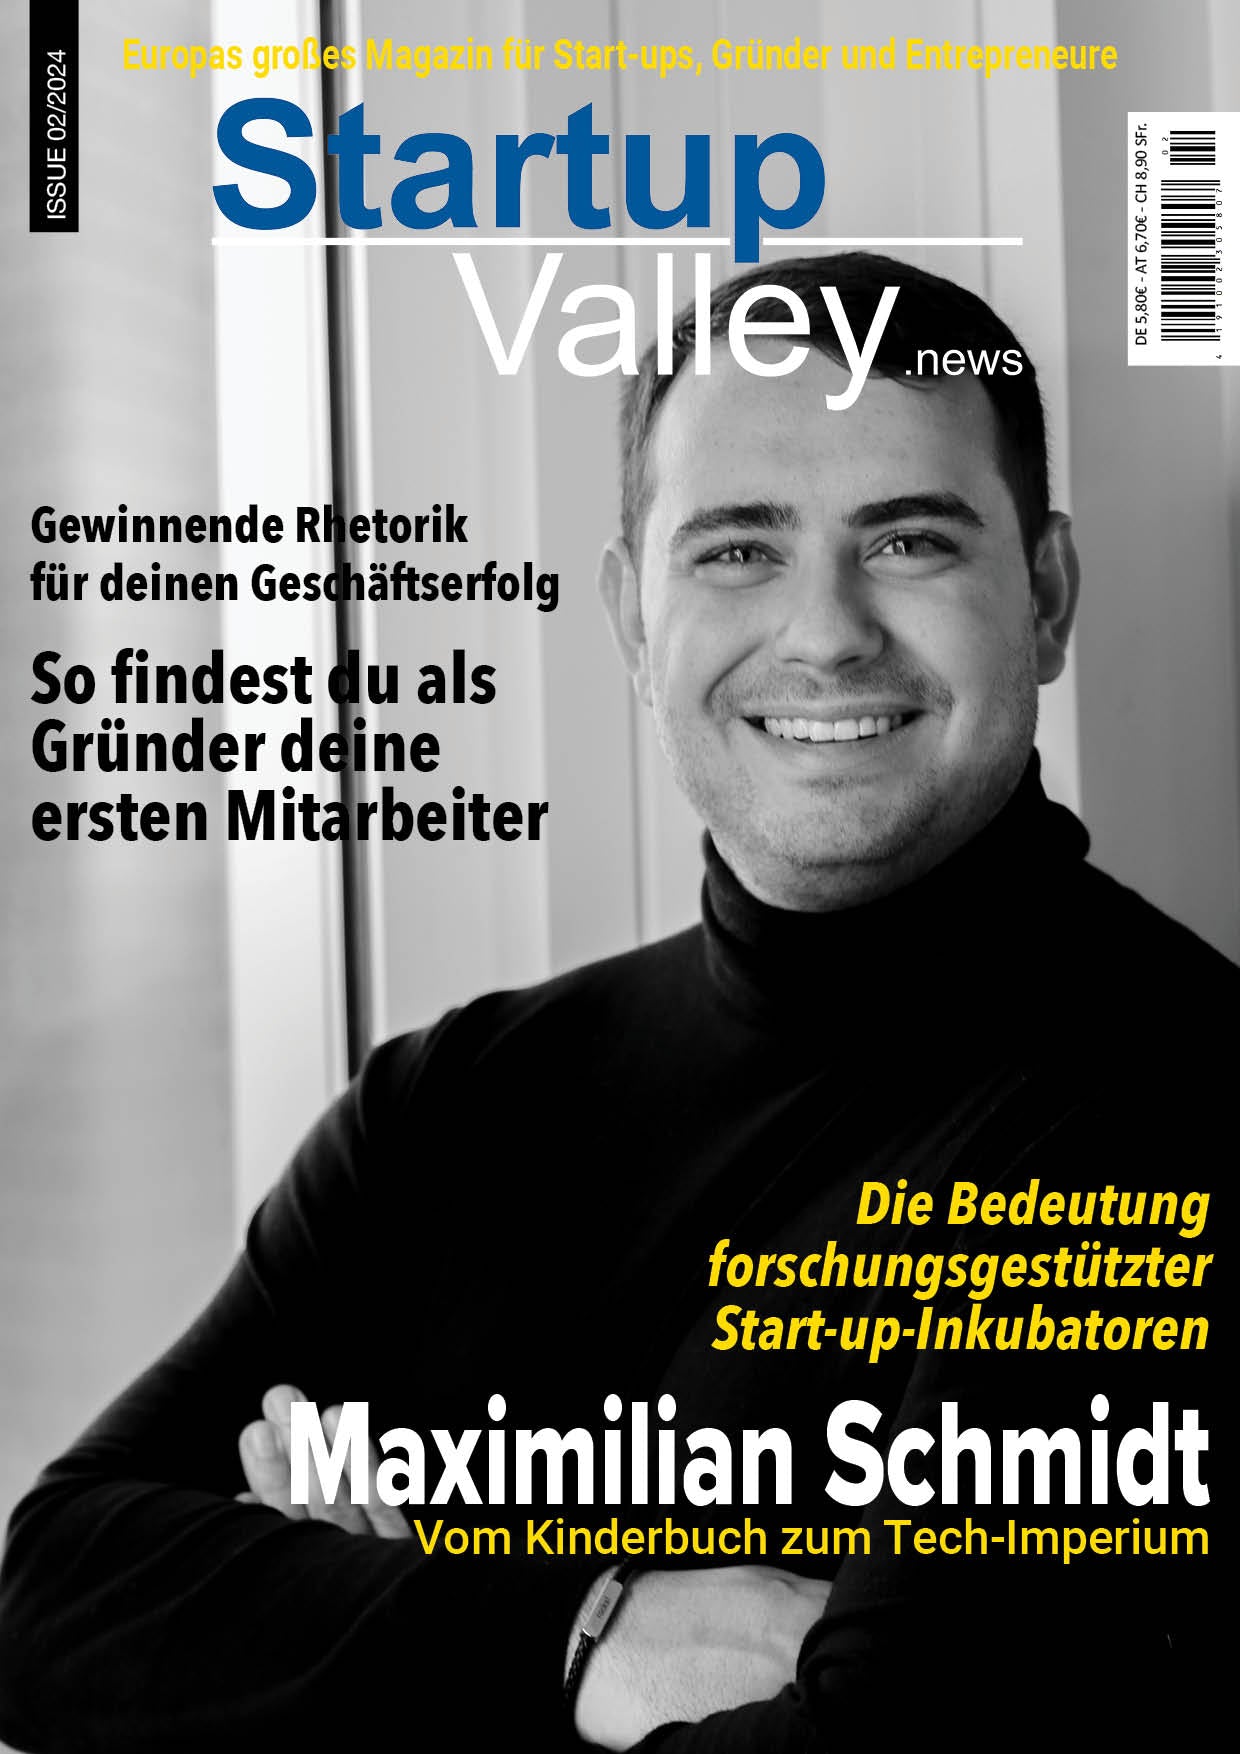 StartupValley - Maximilian Schmidt vom Kinderbuch zum Tech-Imperium